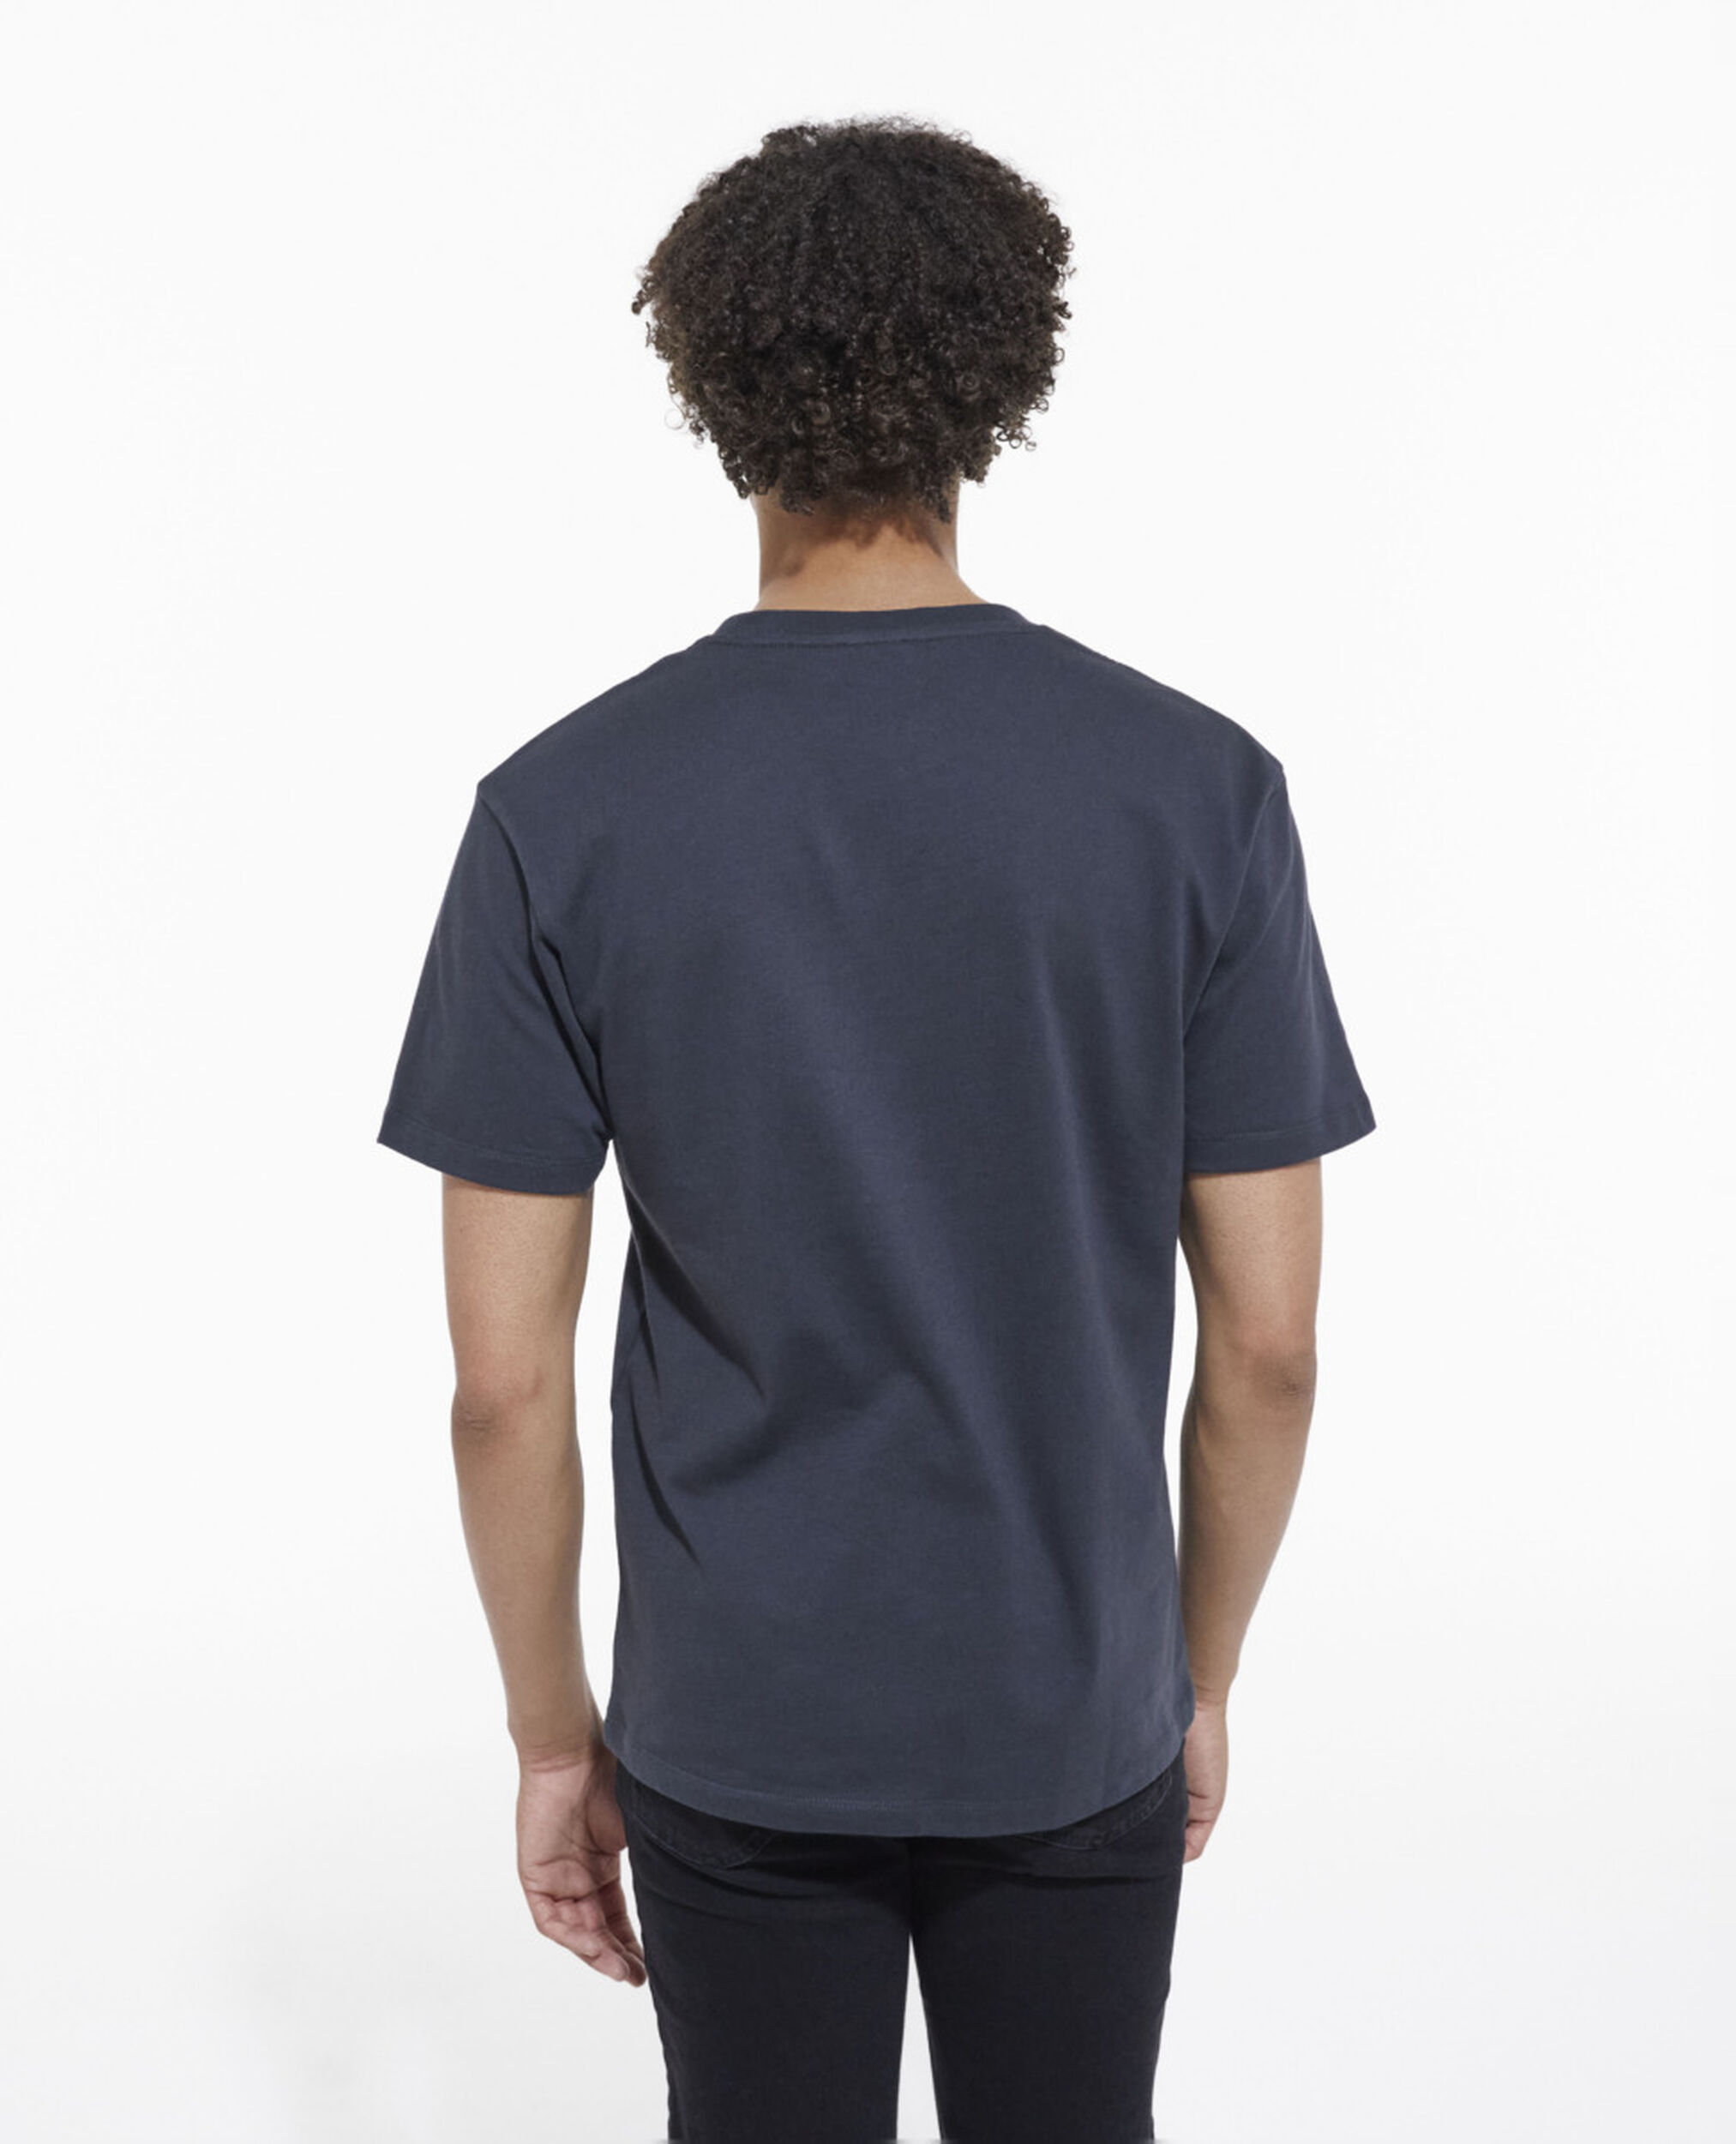 Schwarzes T-Shirt mit Siebdruck, STONE, hi-res image number null